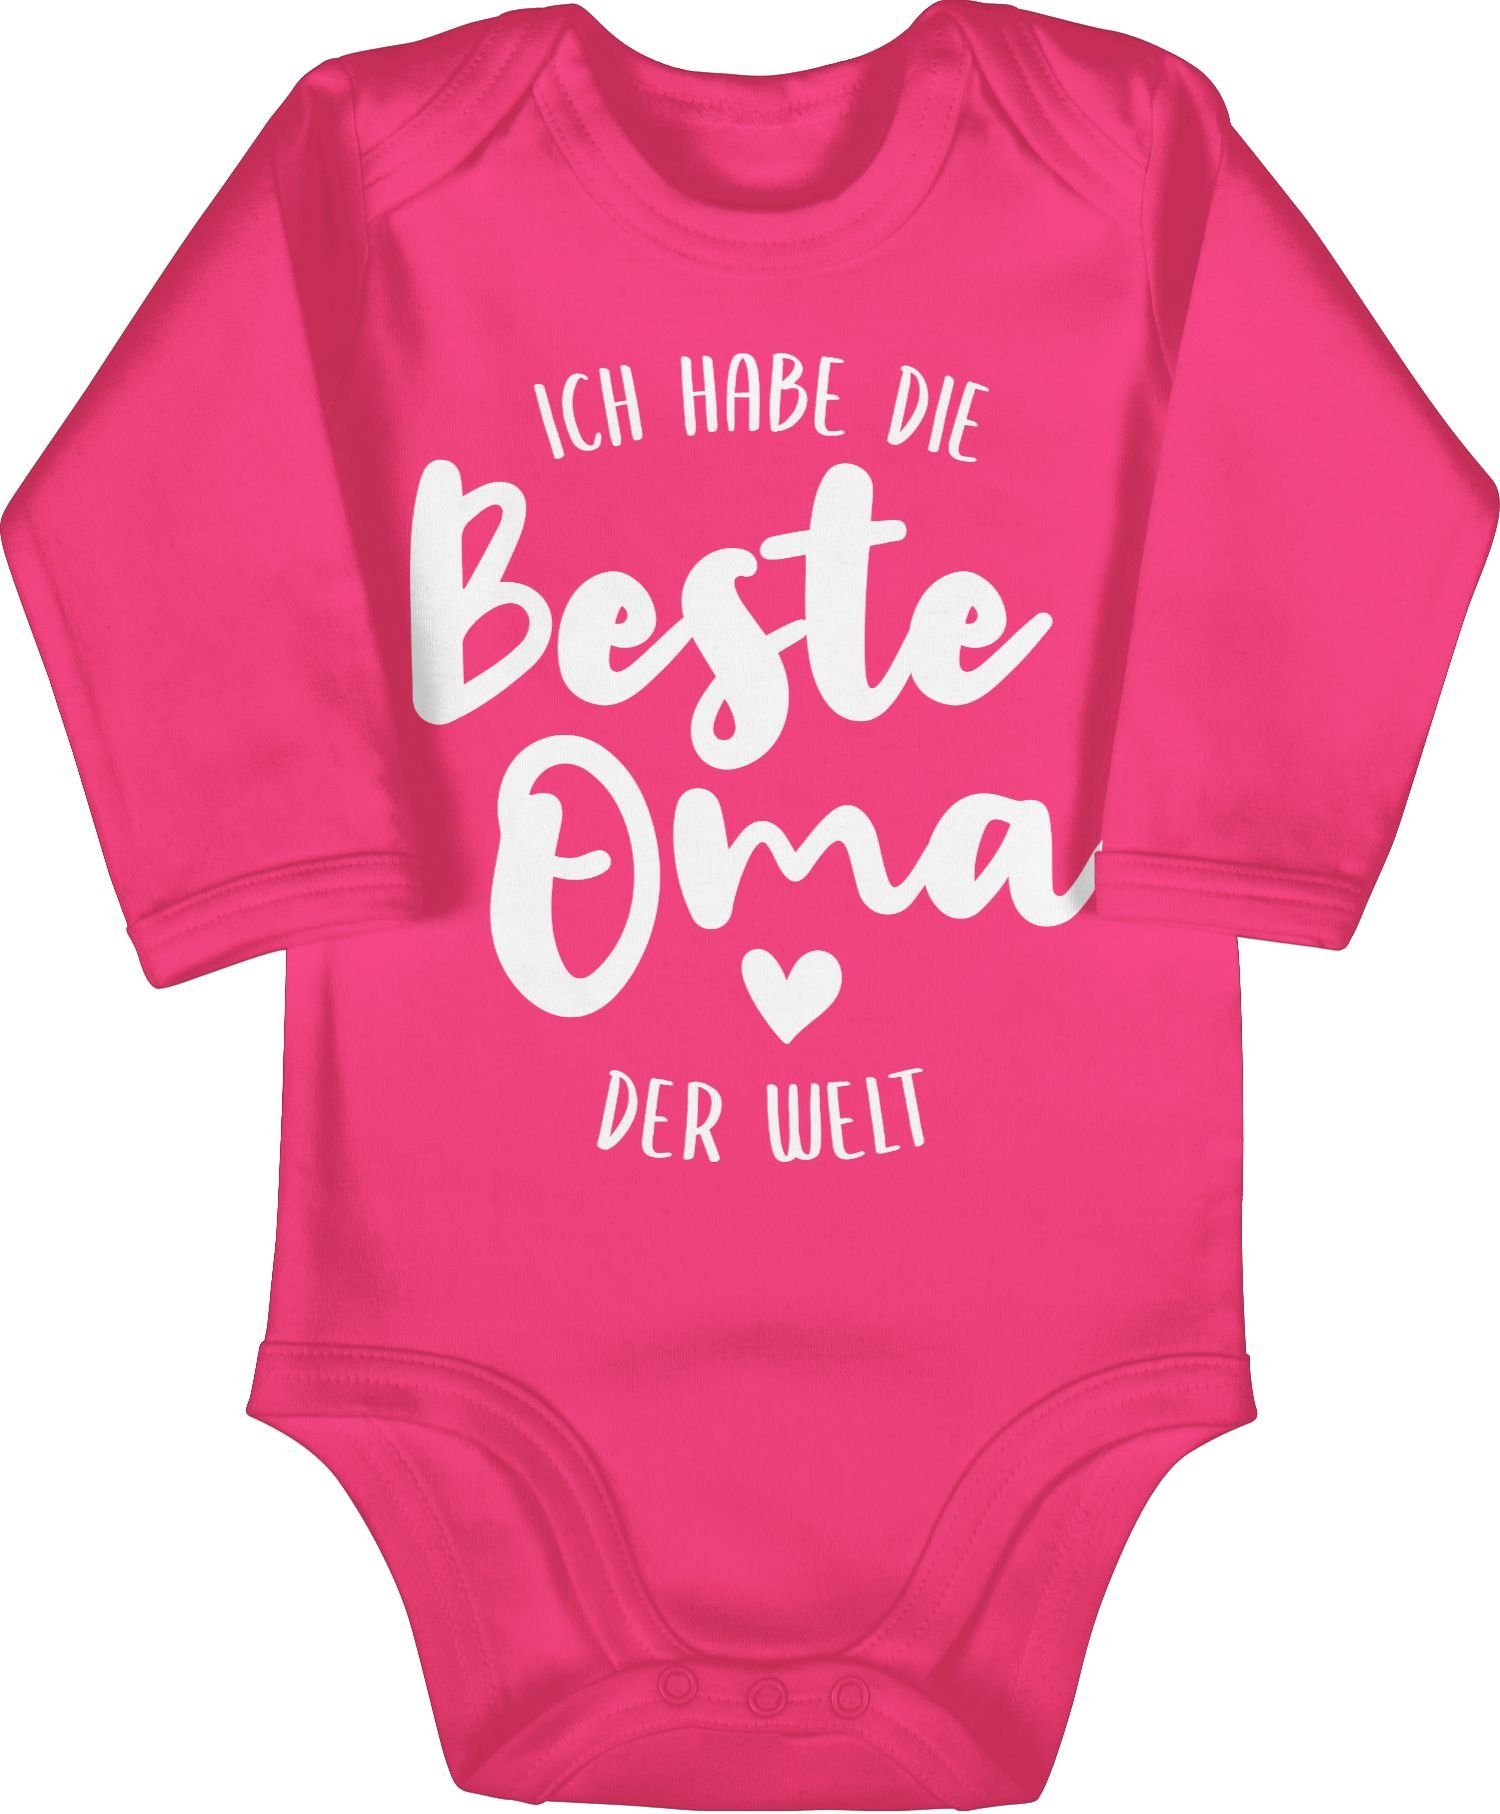 Oma & die Mädchen Ich Welt Fuchsia habe Strampler 3 Shirtracer Baby Junge Shirtbody beste der